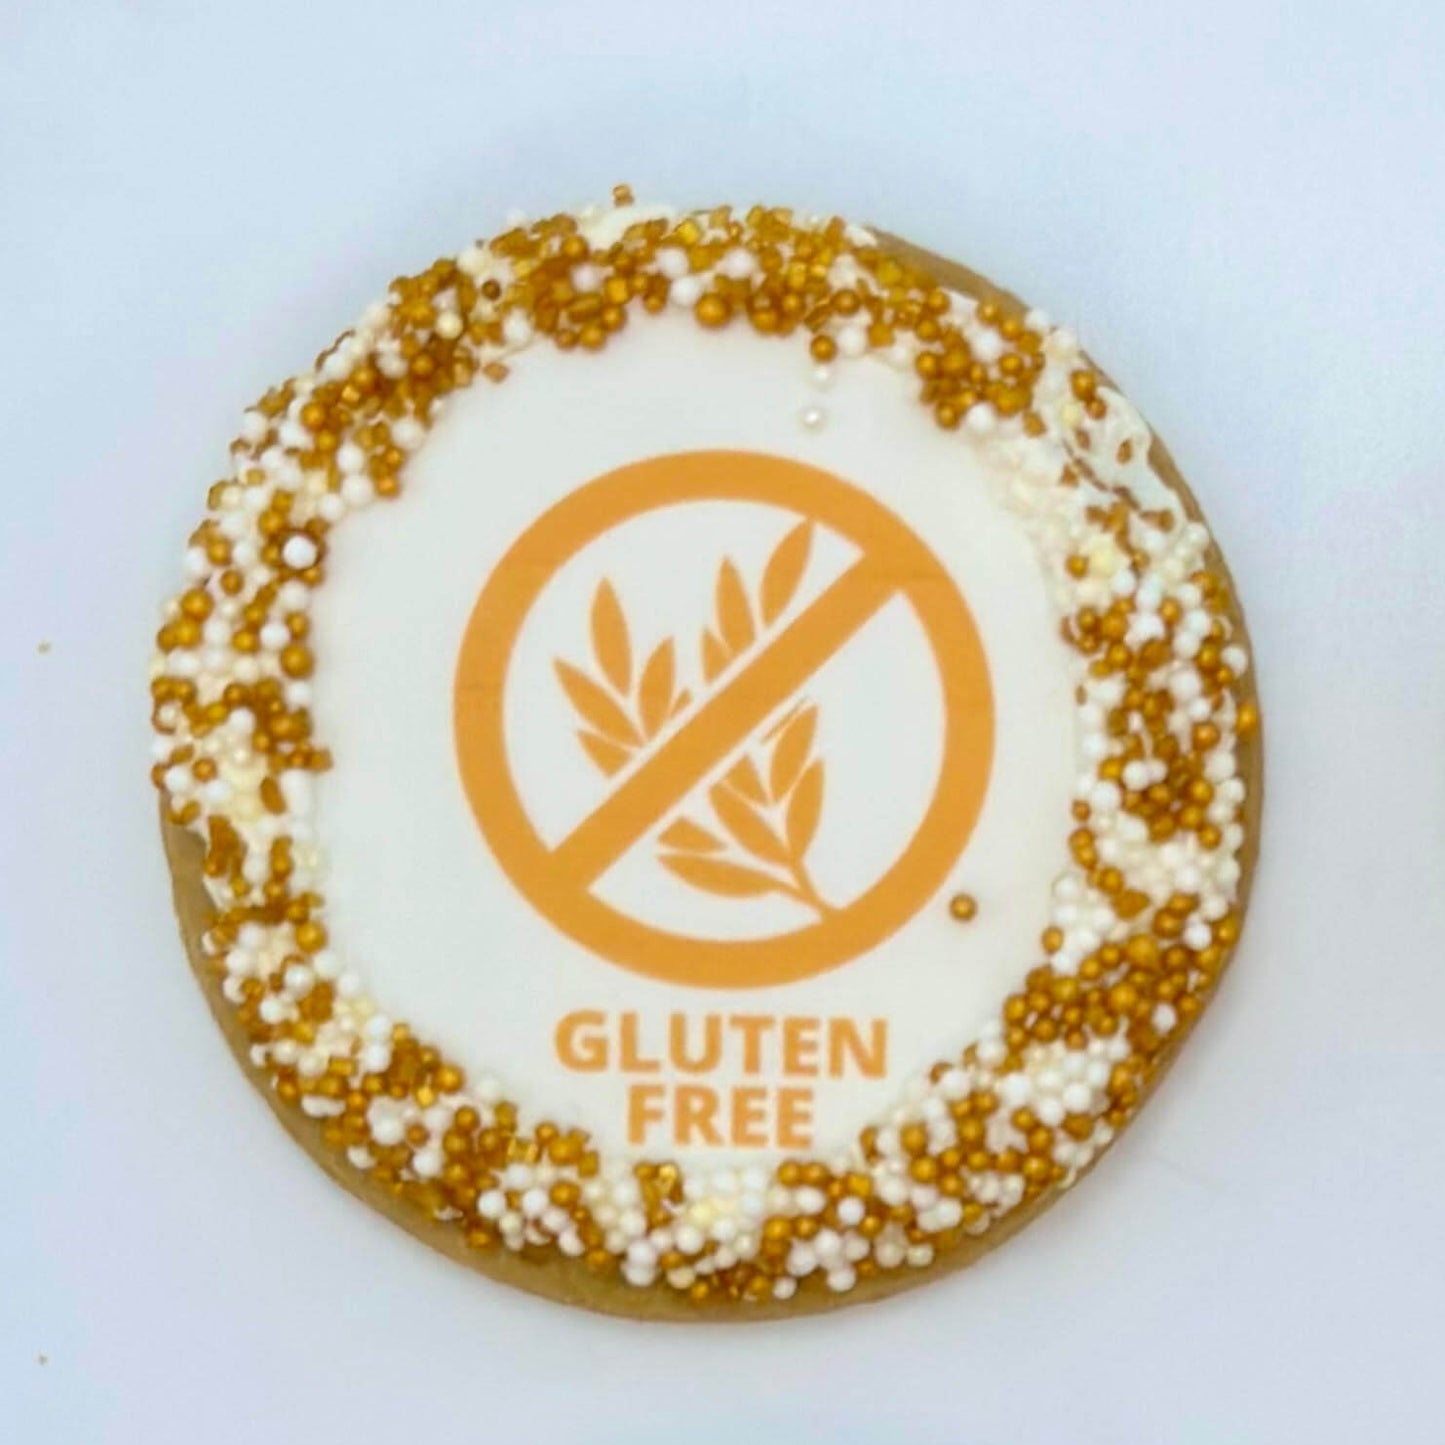 Gluten-Free Nut-Free Printed Image Cookies